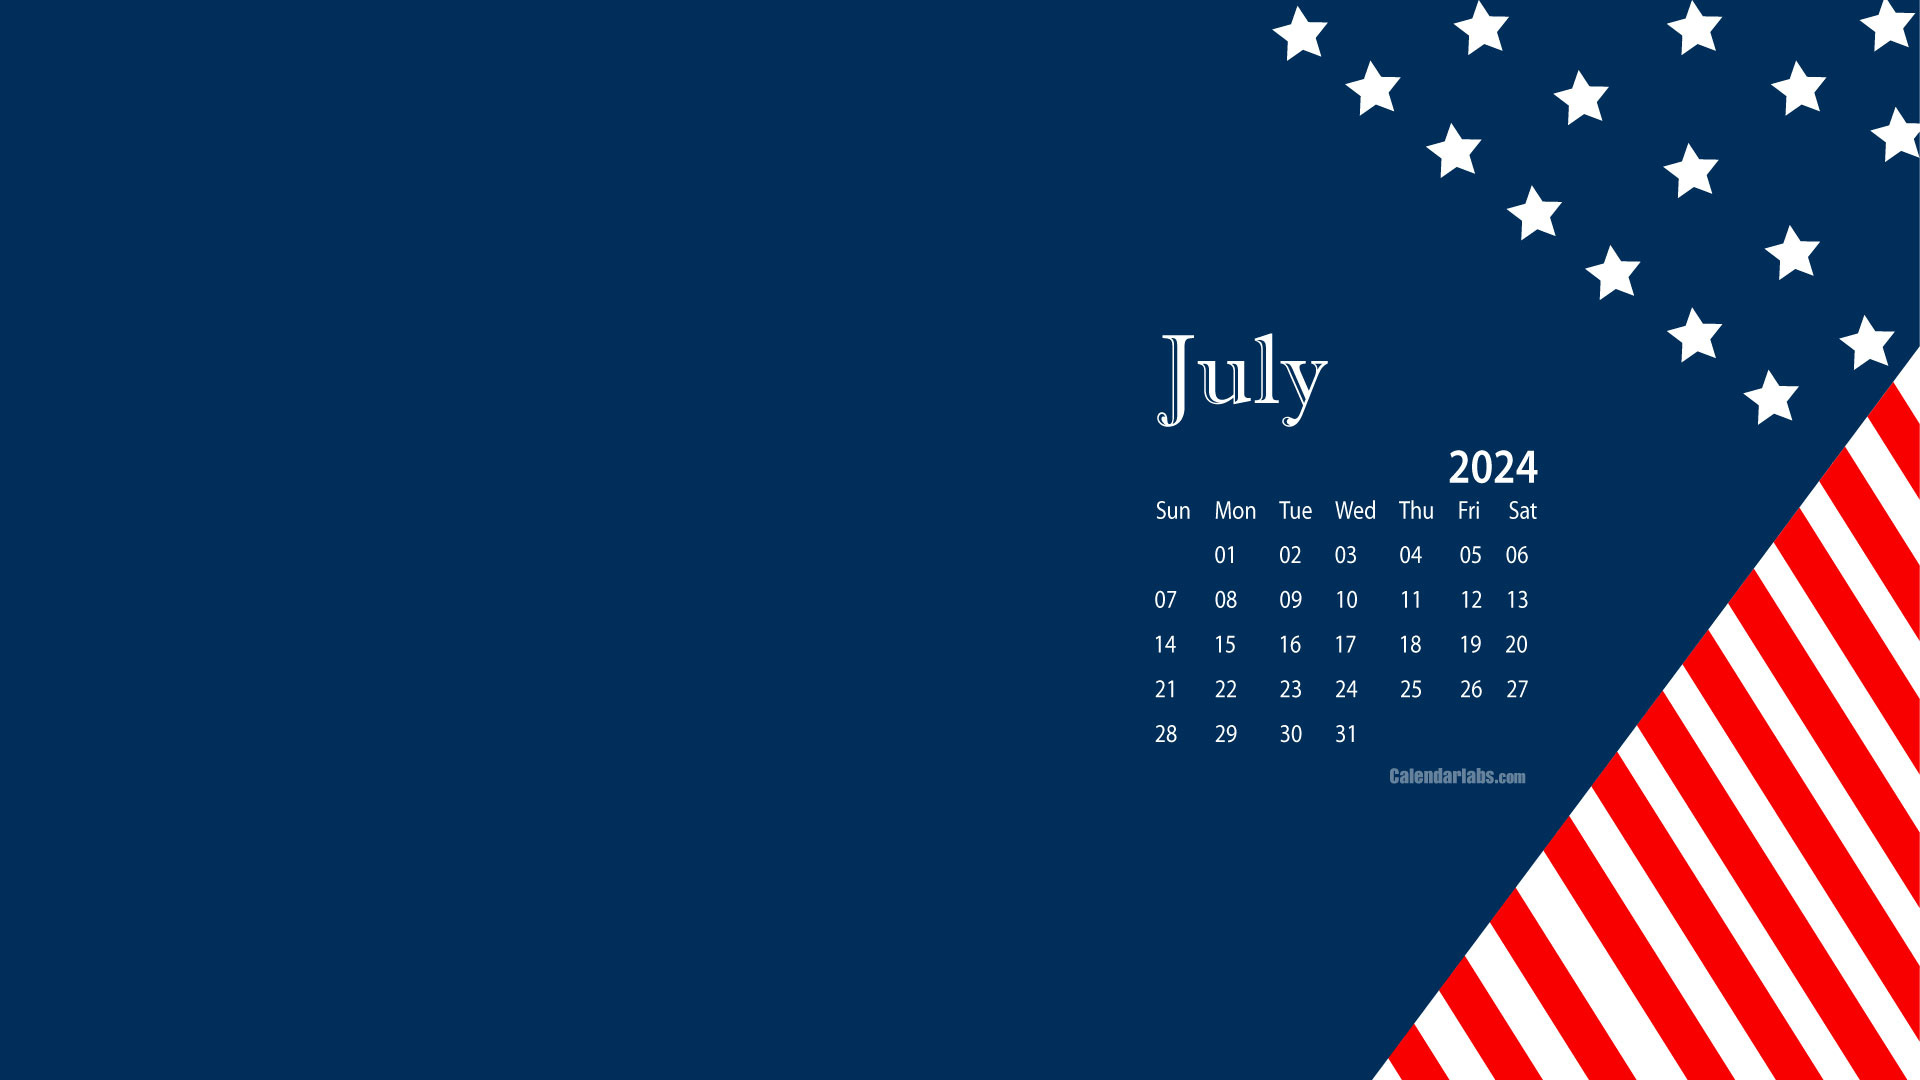 July 2024 Desktop Wallpaper Calendar - Calendarlabs regarding July 2024 Calendar Wallpaper